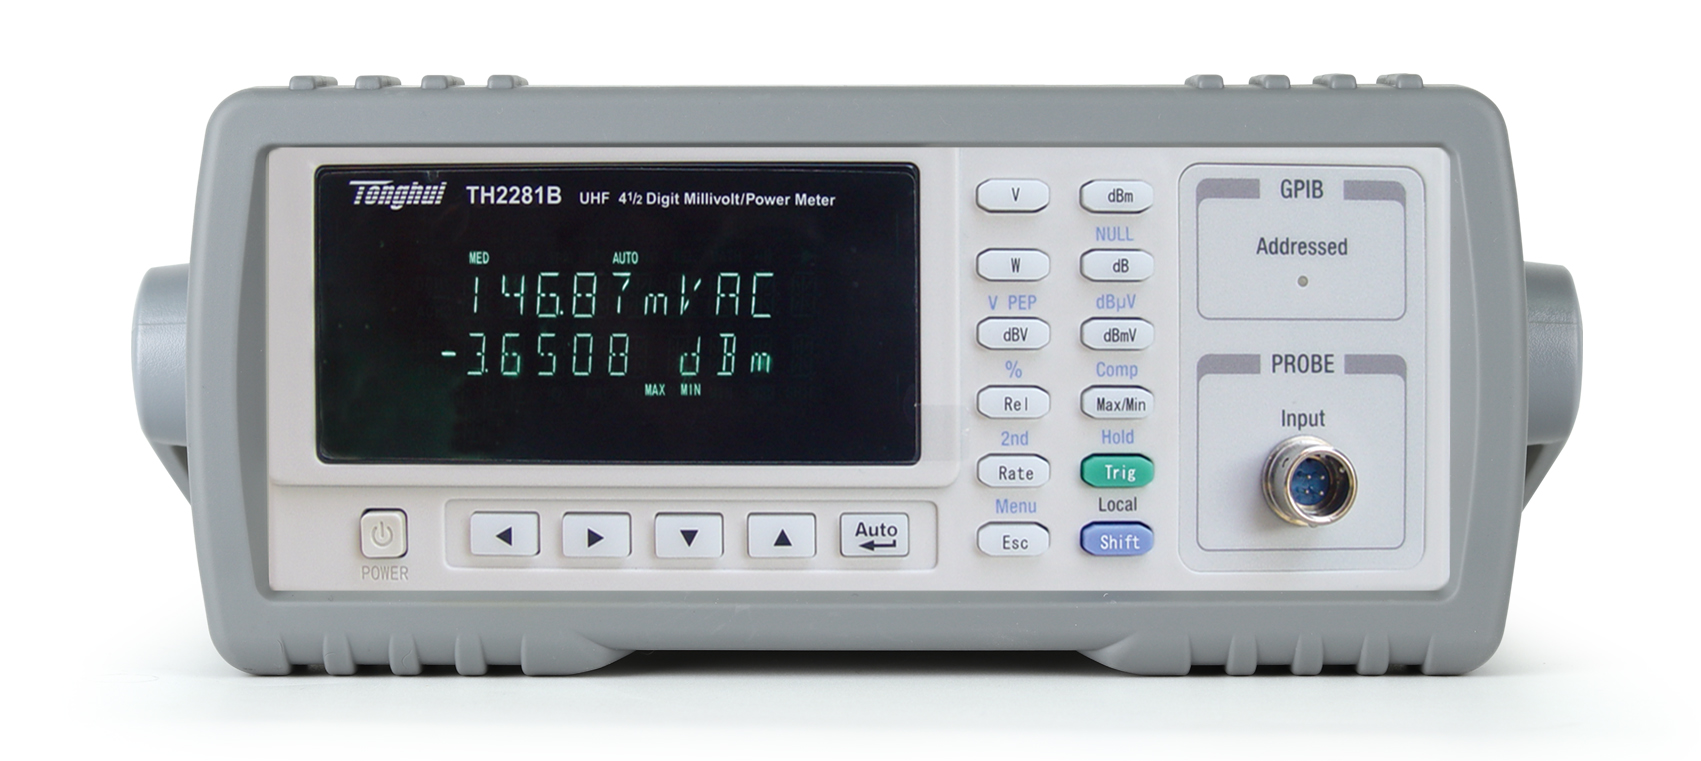 同惠TH2281B 超高频数字毫伏/功率表